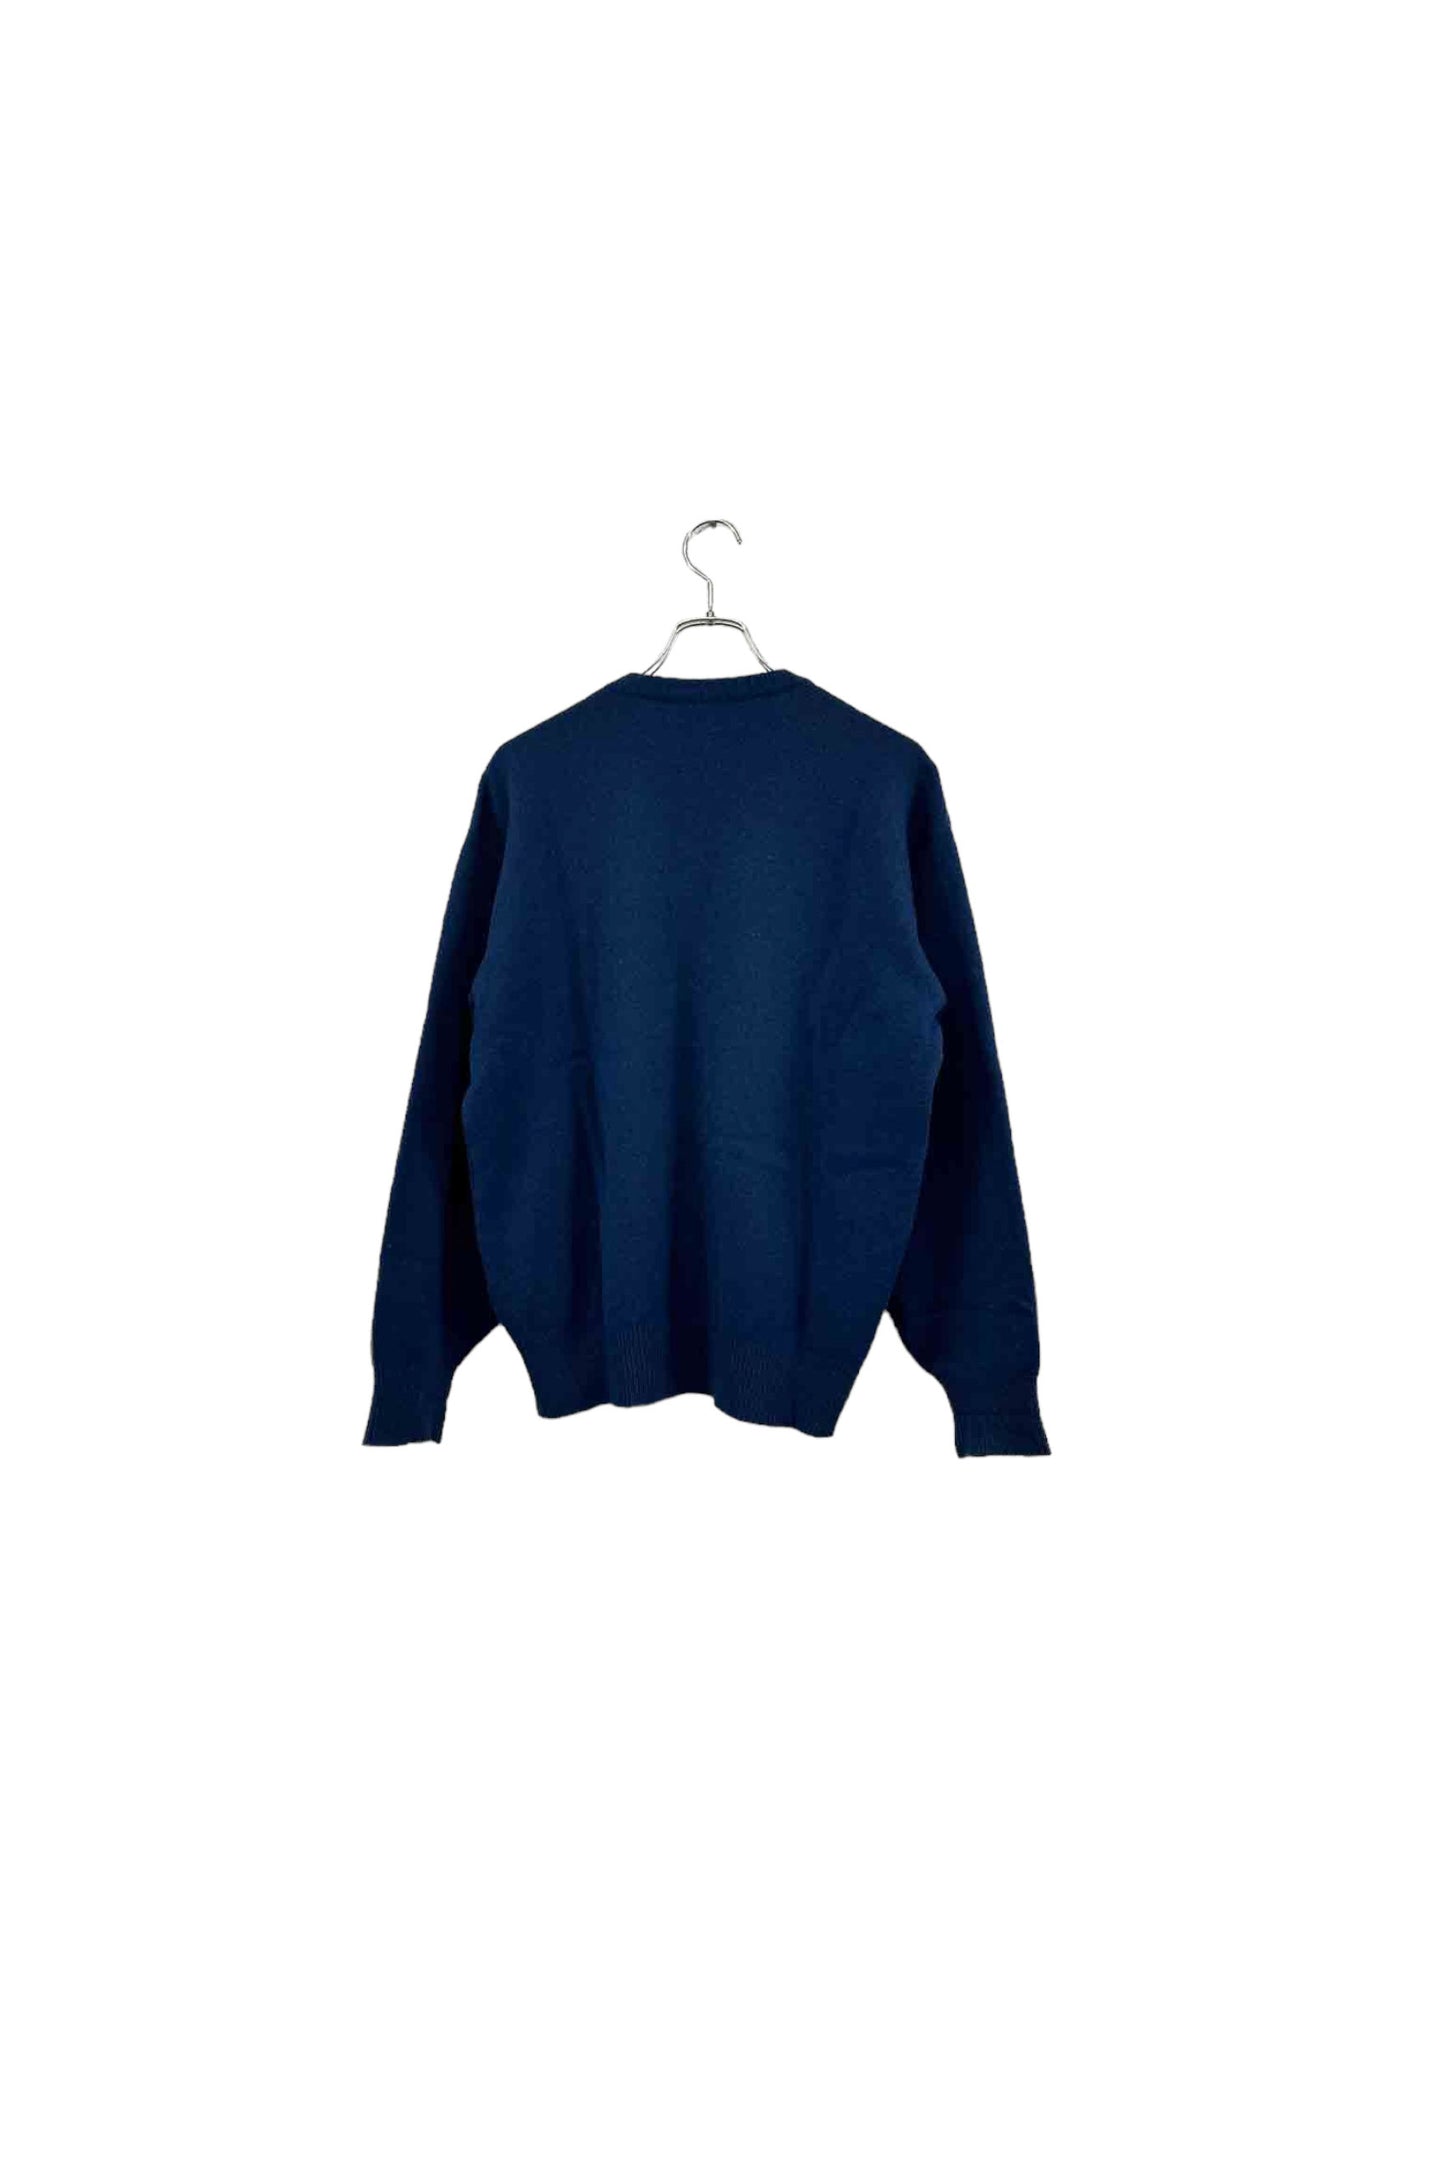 pierre cardin blue cashmere sweater